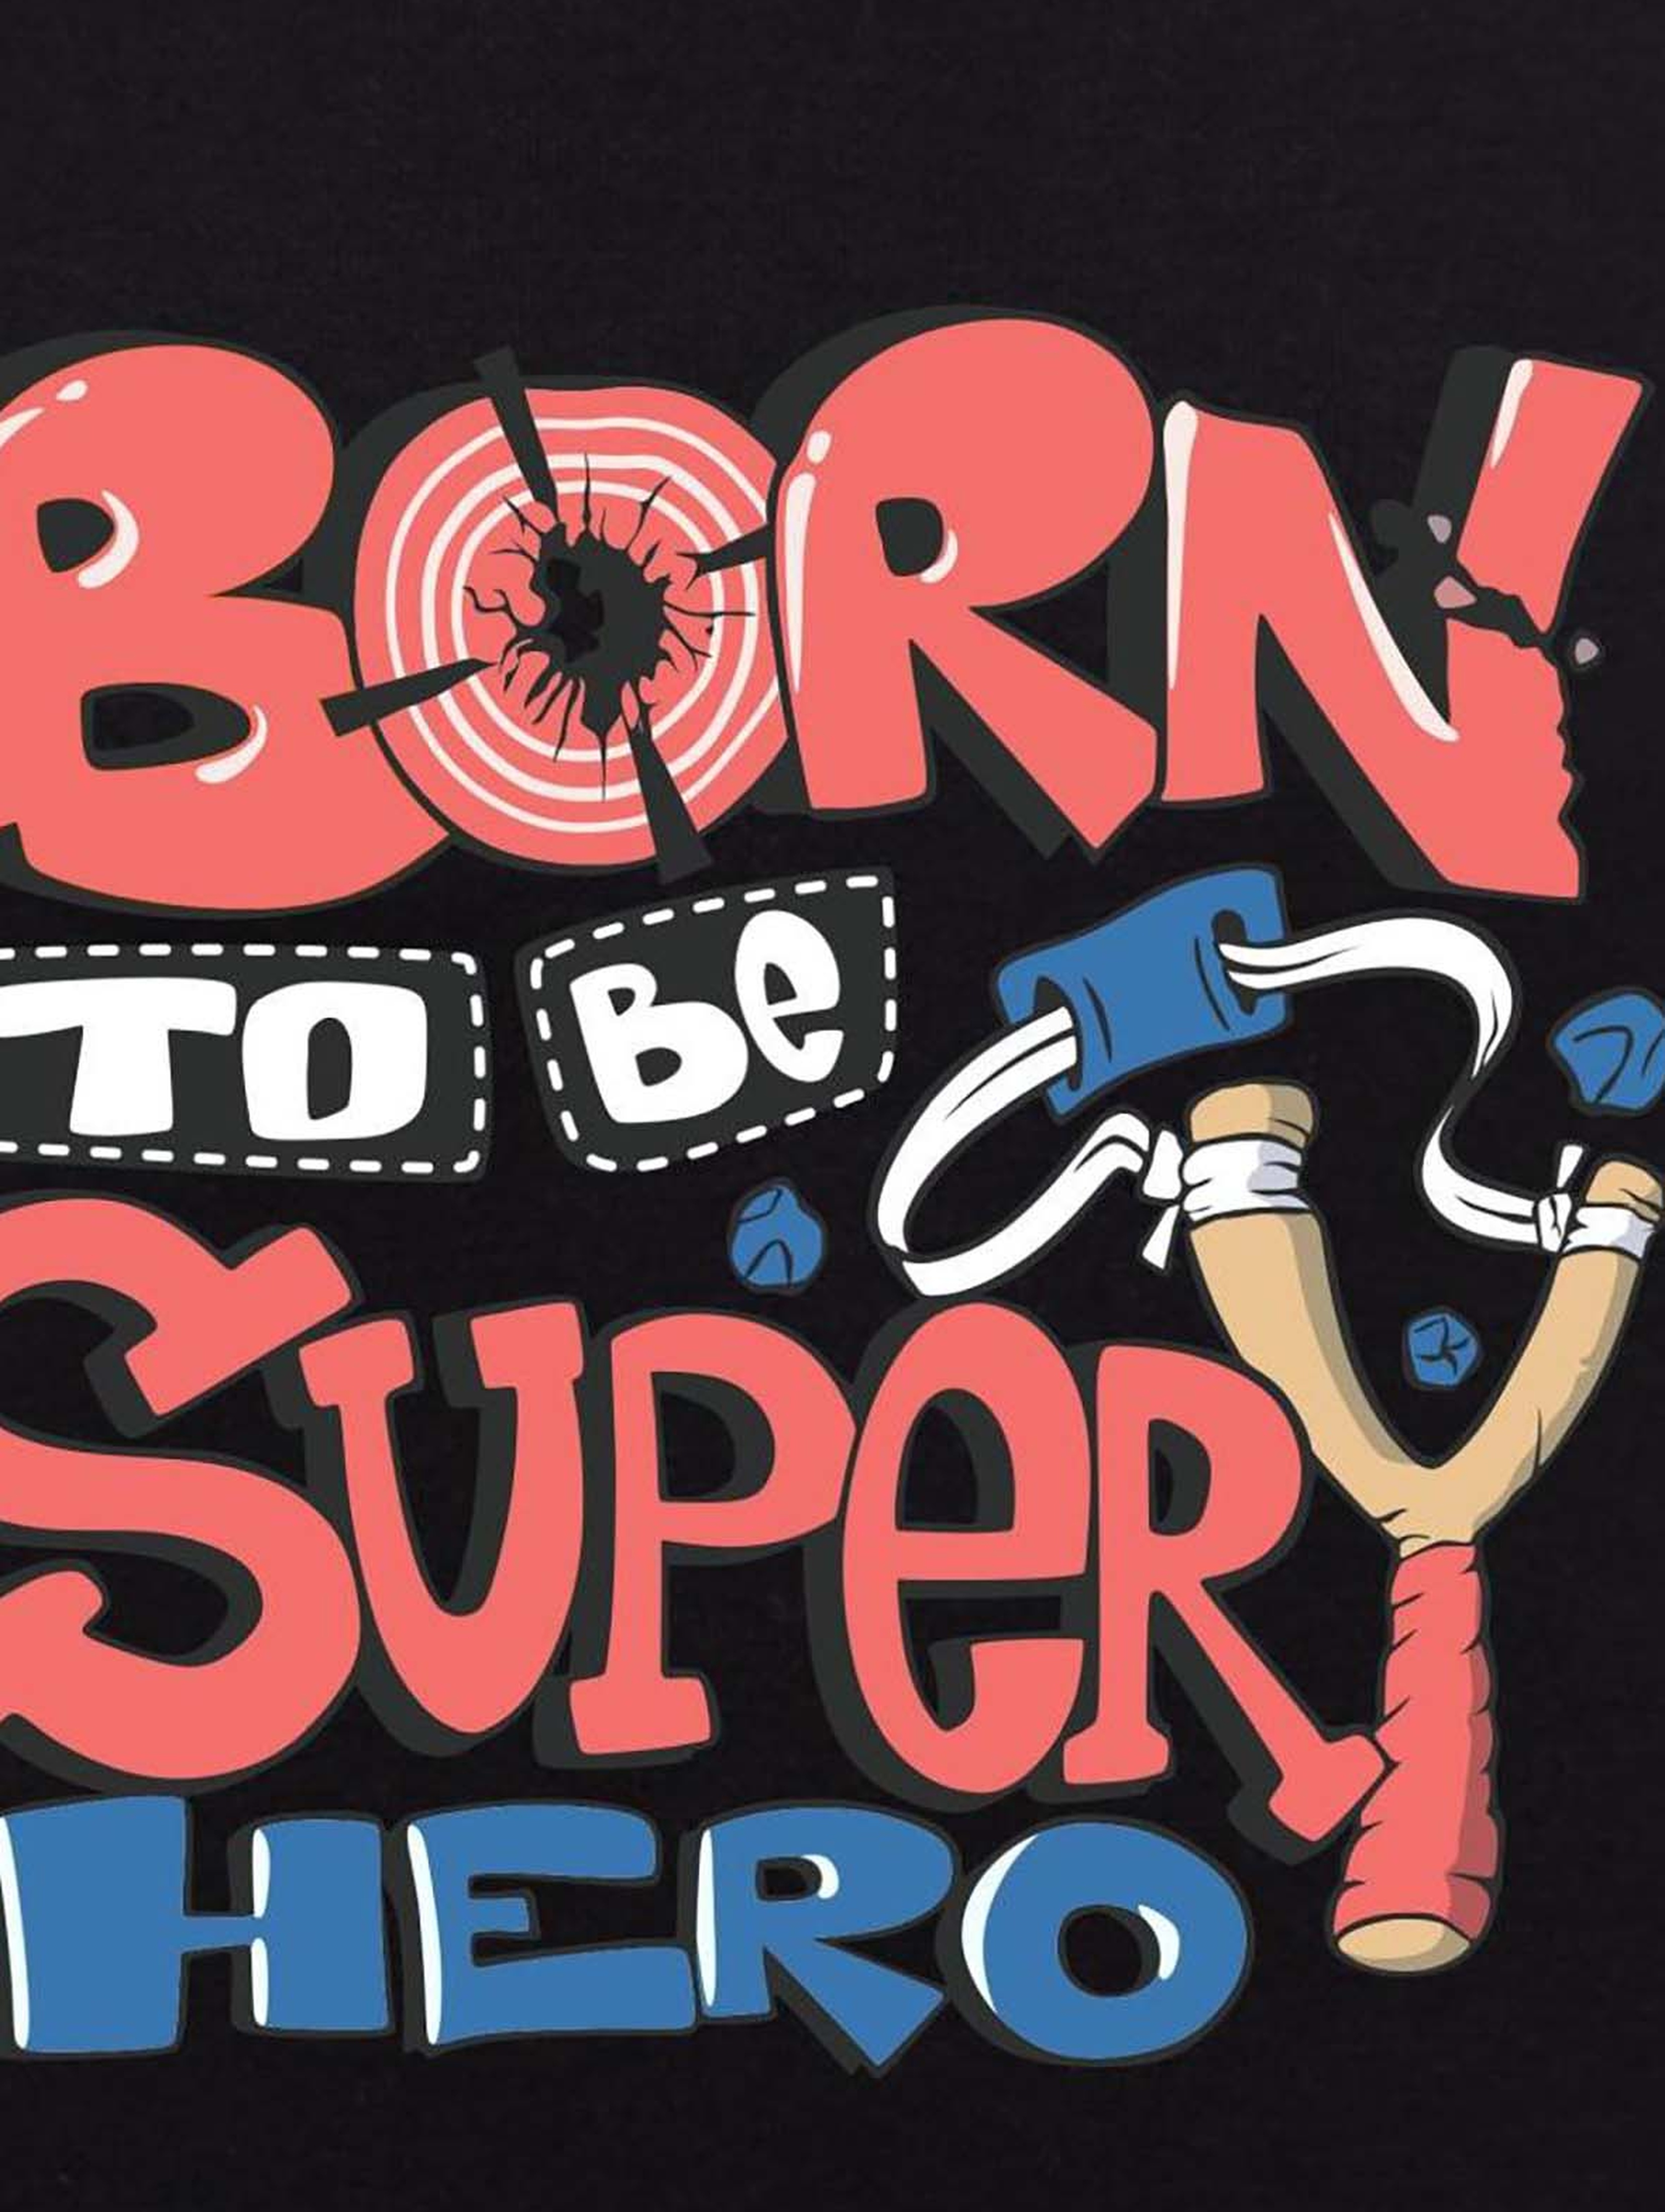 Chłopięca bluza z napisem Born to be superhero czarna